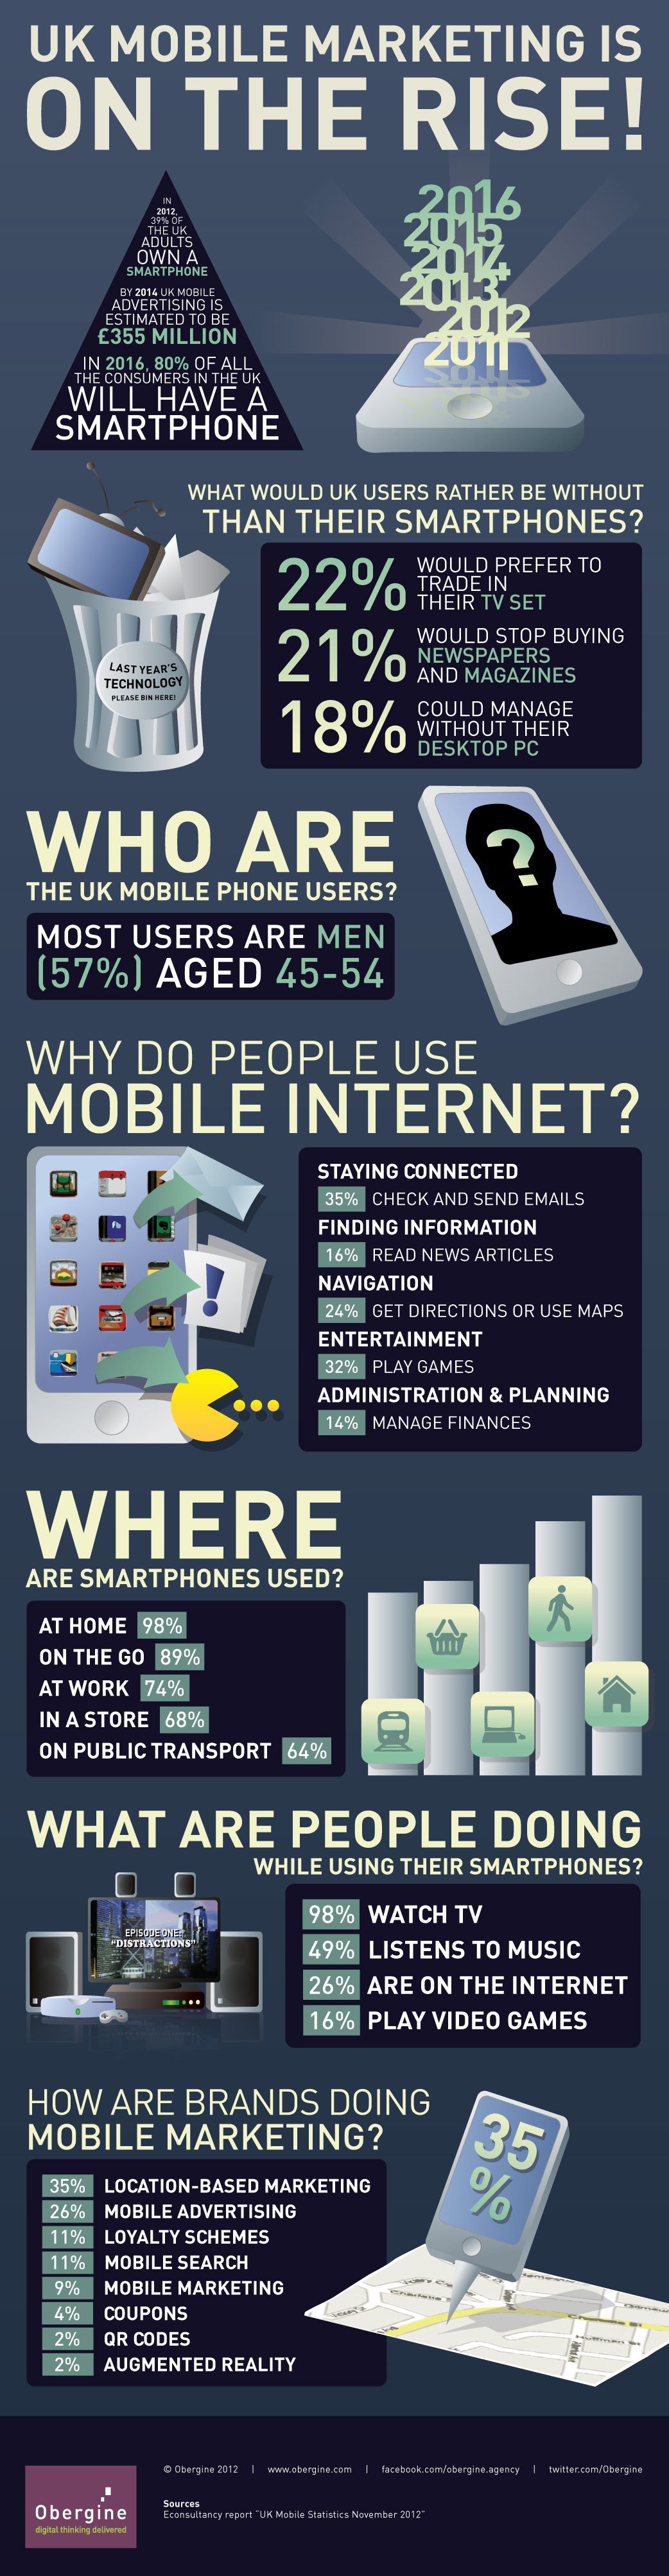 9. Mobile Marketing in UK